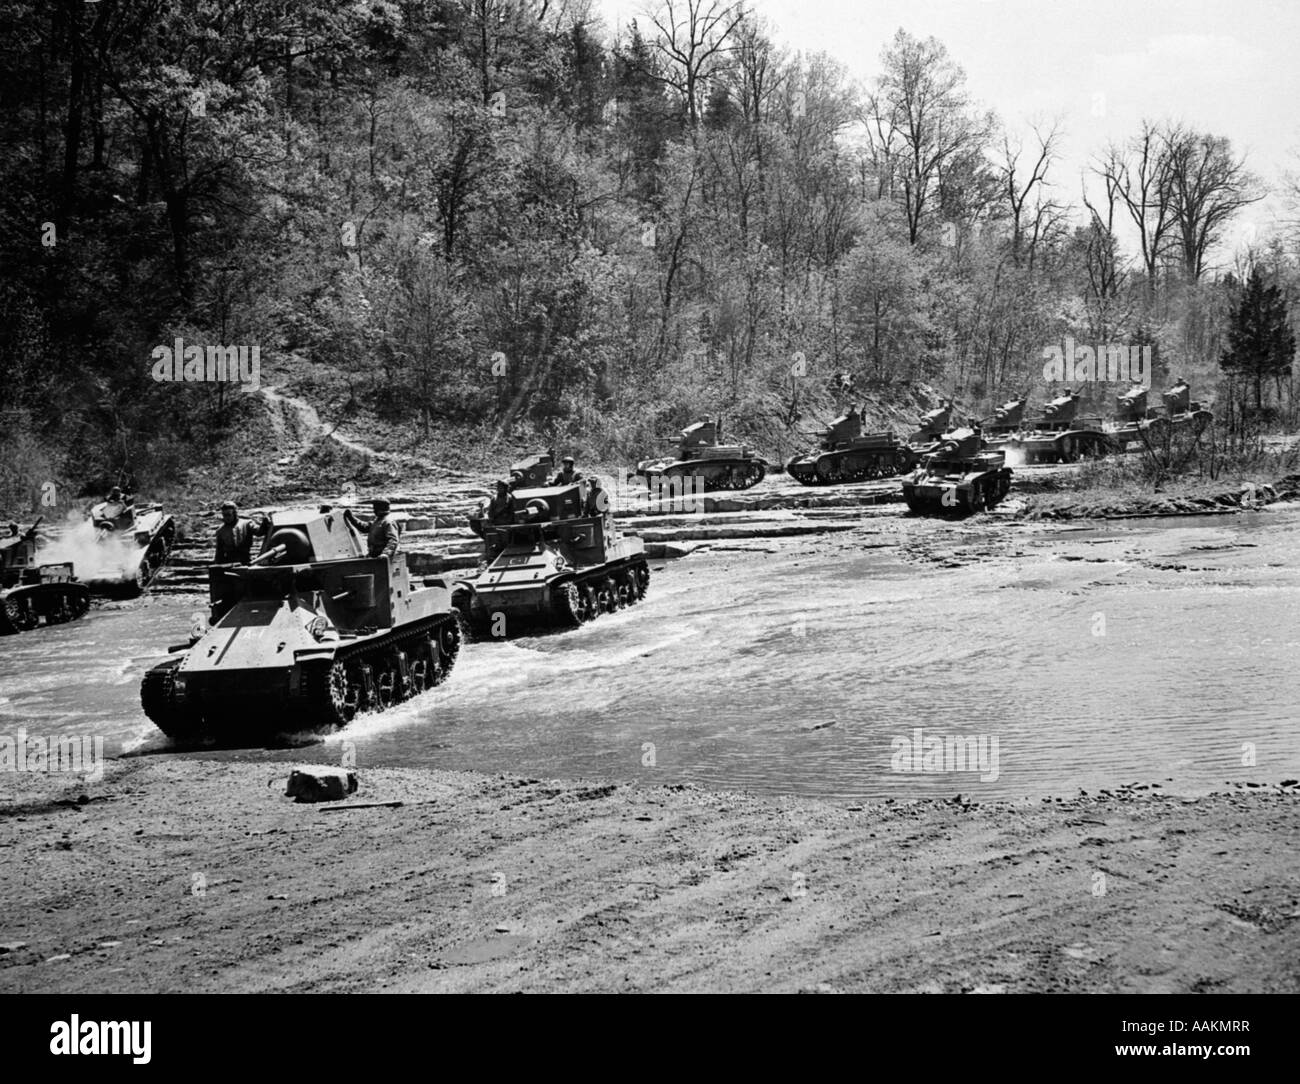 1940 LA DEUXIÈME GUERRE MONDIALE, 12 chars de l'ARMÉE AMÉRICAINE DE MANOEUVRES flux traversant une rivière ARME BLINDÉE Banque D'Images